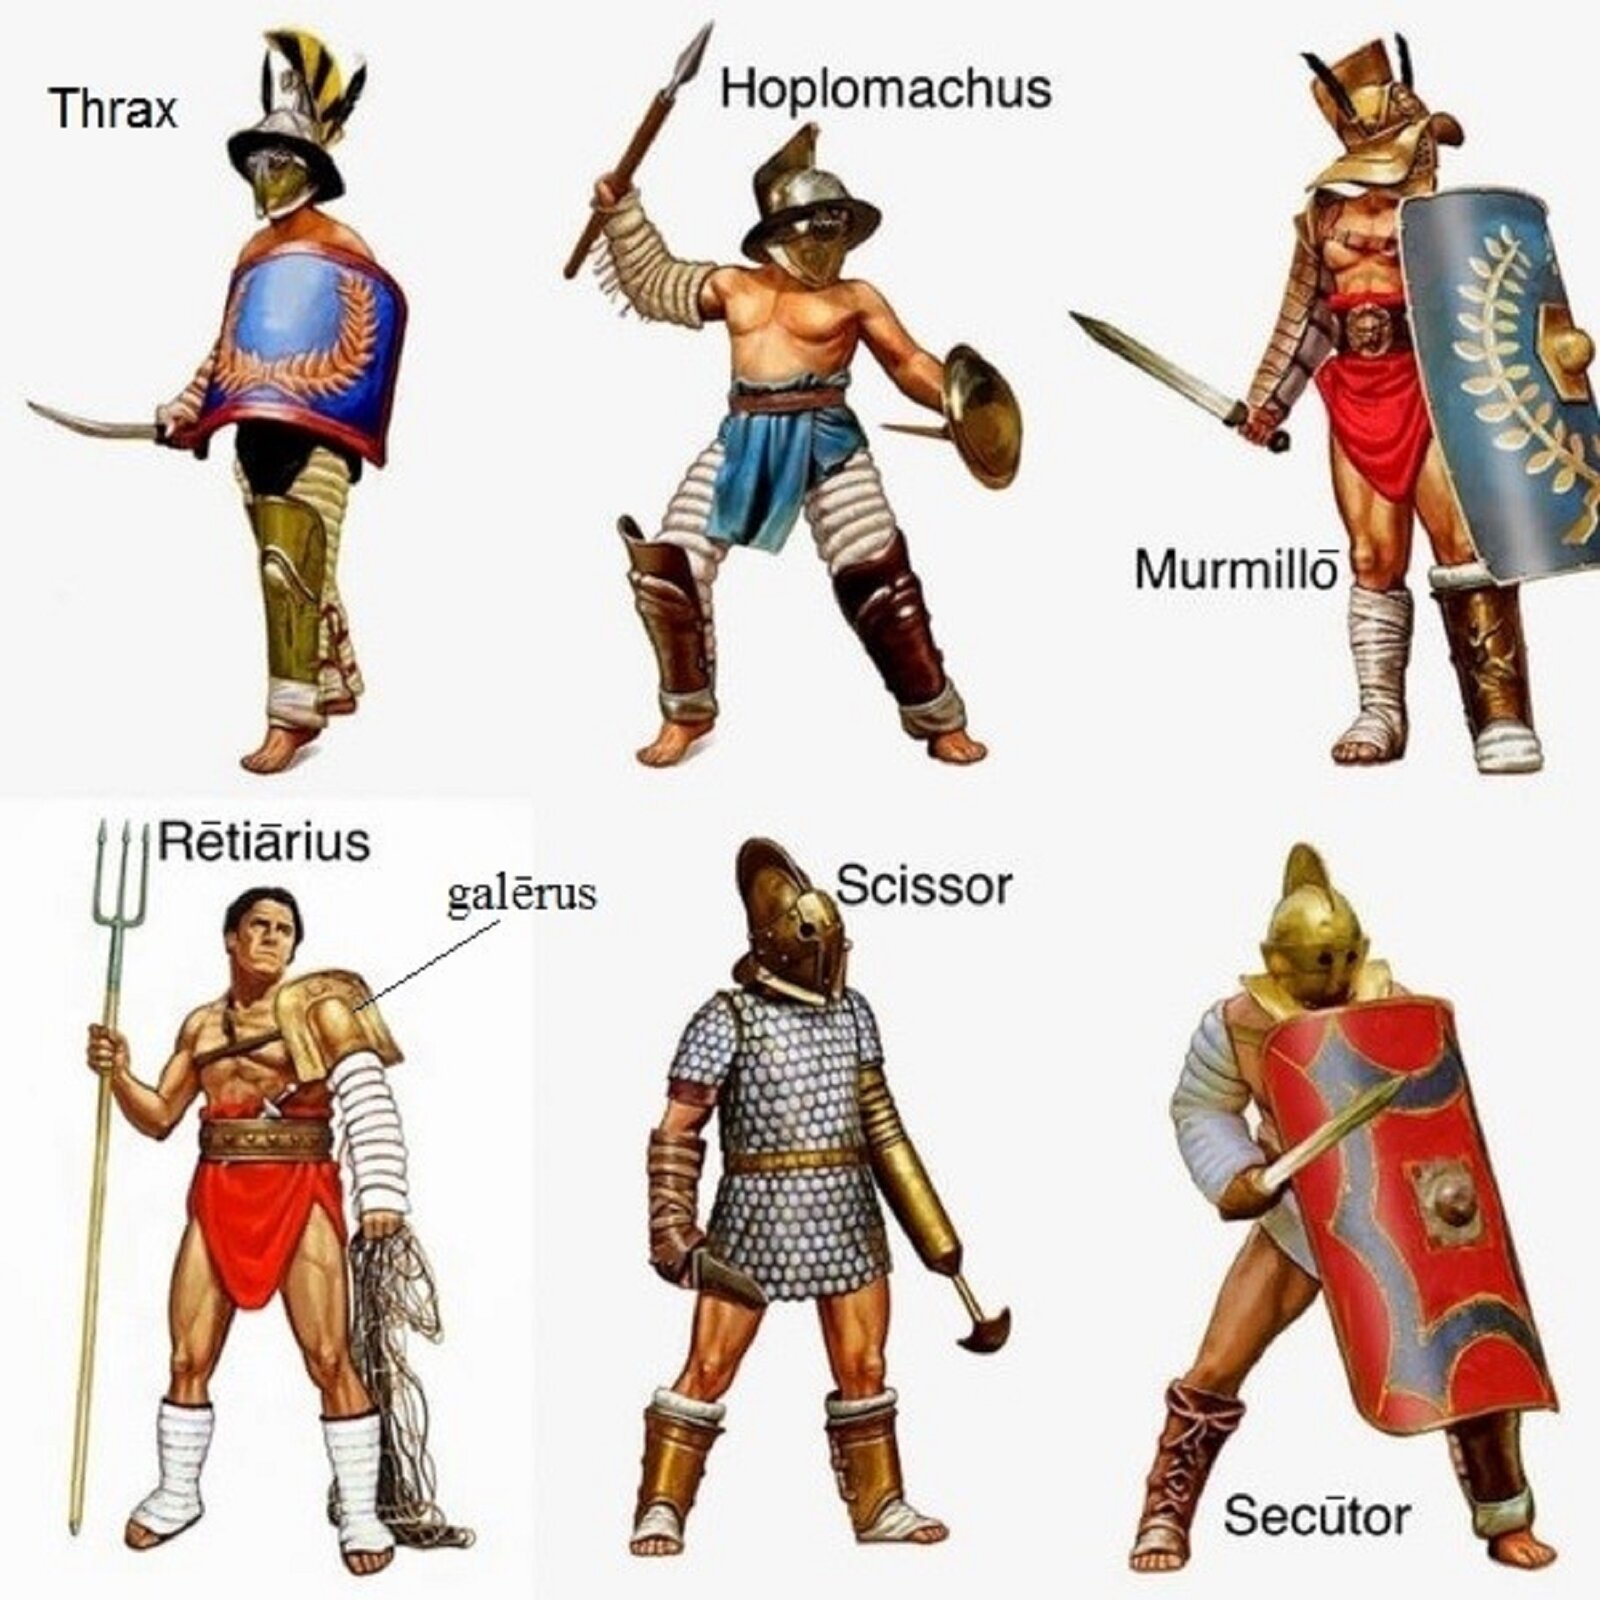 Ilustracja przedstawia sześciu gladiatorów, każdy z nich charakteryzuje się odmiennym stylem walki i uzbrojeniem. Zostali oni podpisani w następujący sposób: Thrax, Hoplomachus, Murmillo, Retarius, Scissor, Secutor.